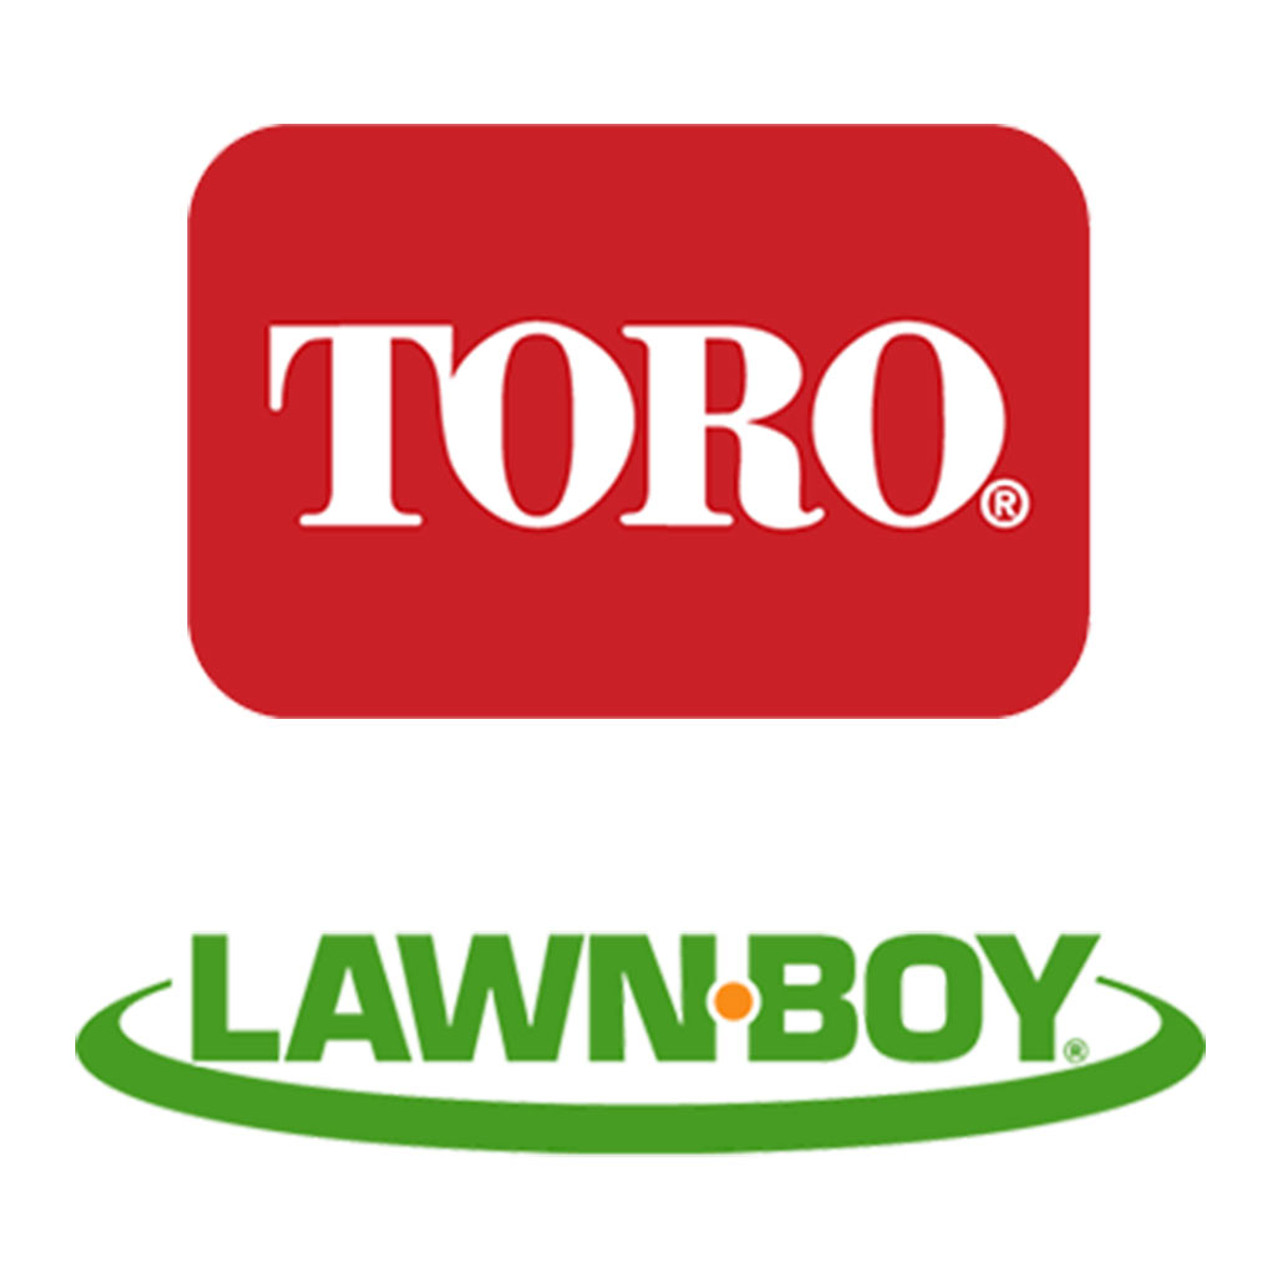 Toro Lawn-Boy 139-8251 Shield-Grass